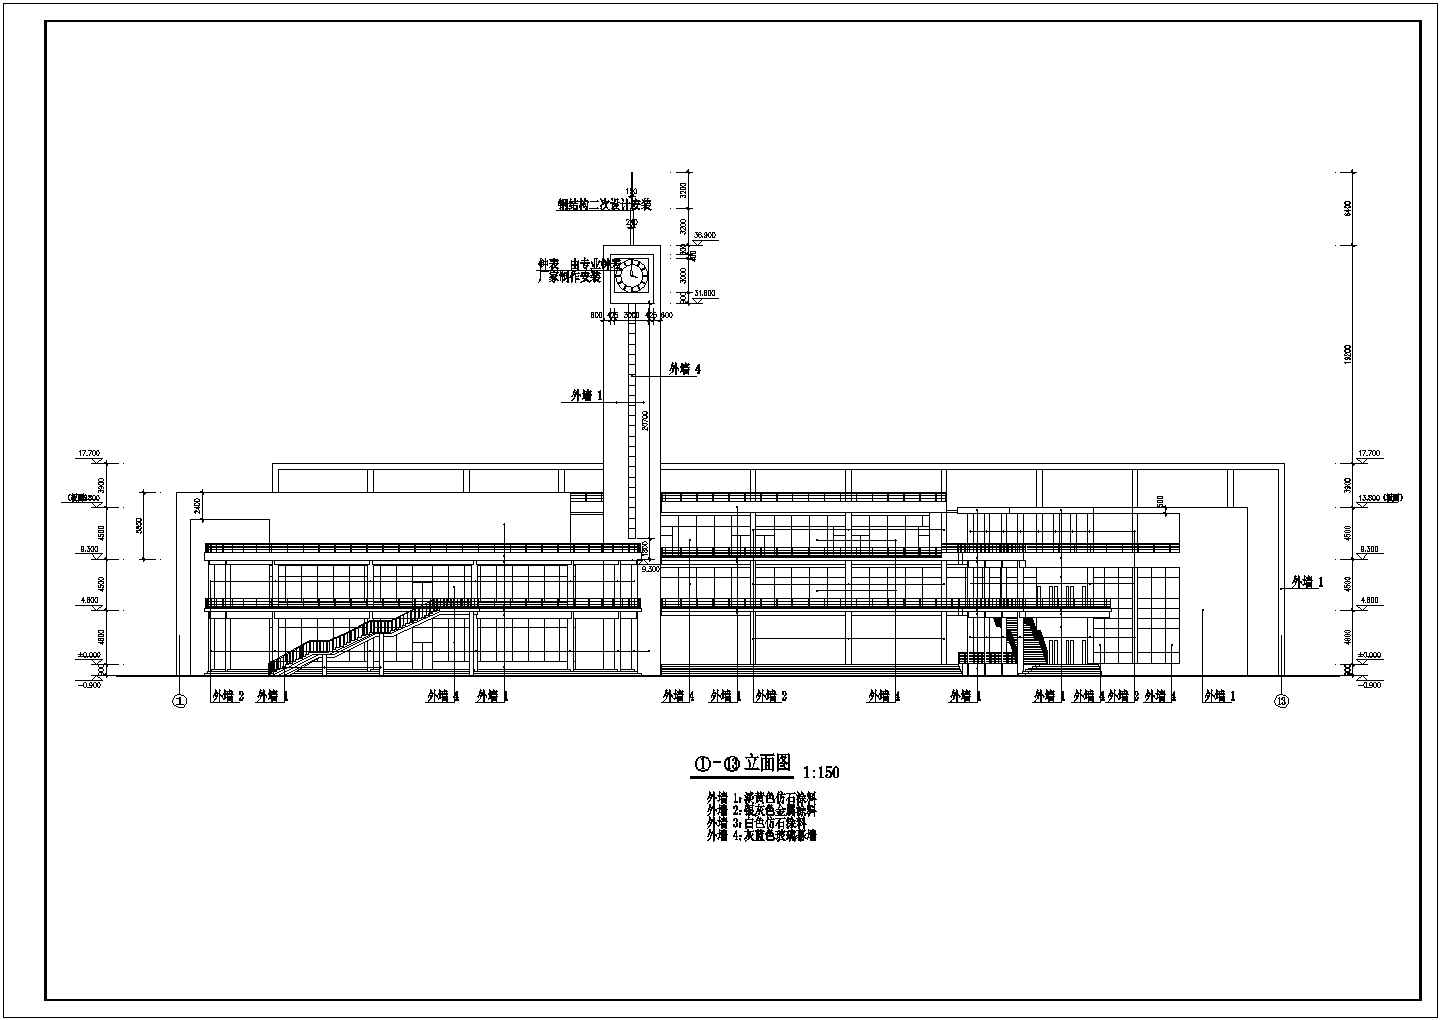 某长97.4米 宽65.59米 3层 某学院学生活动中心CAD建筑设计图